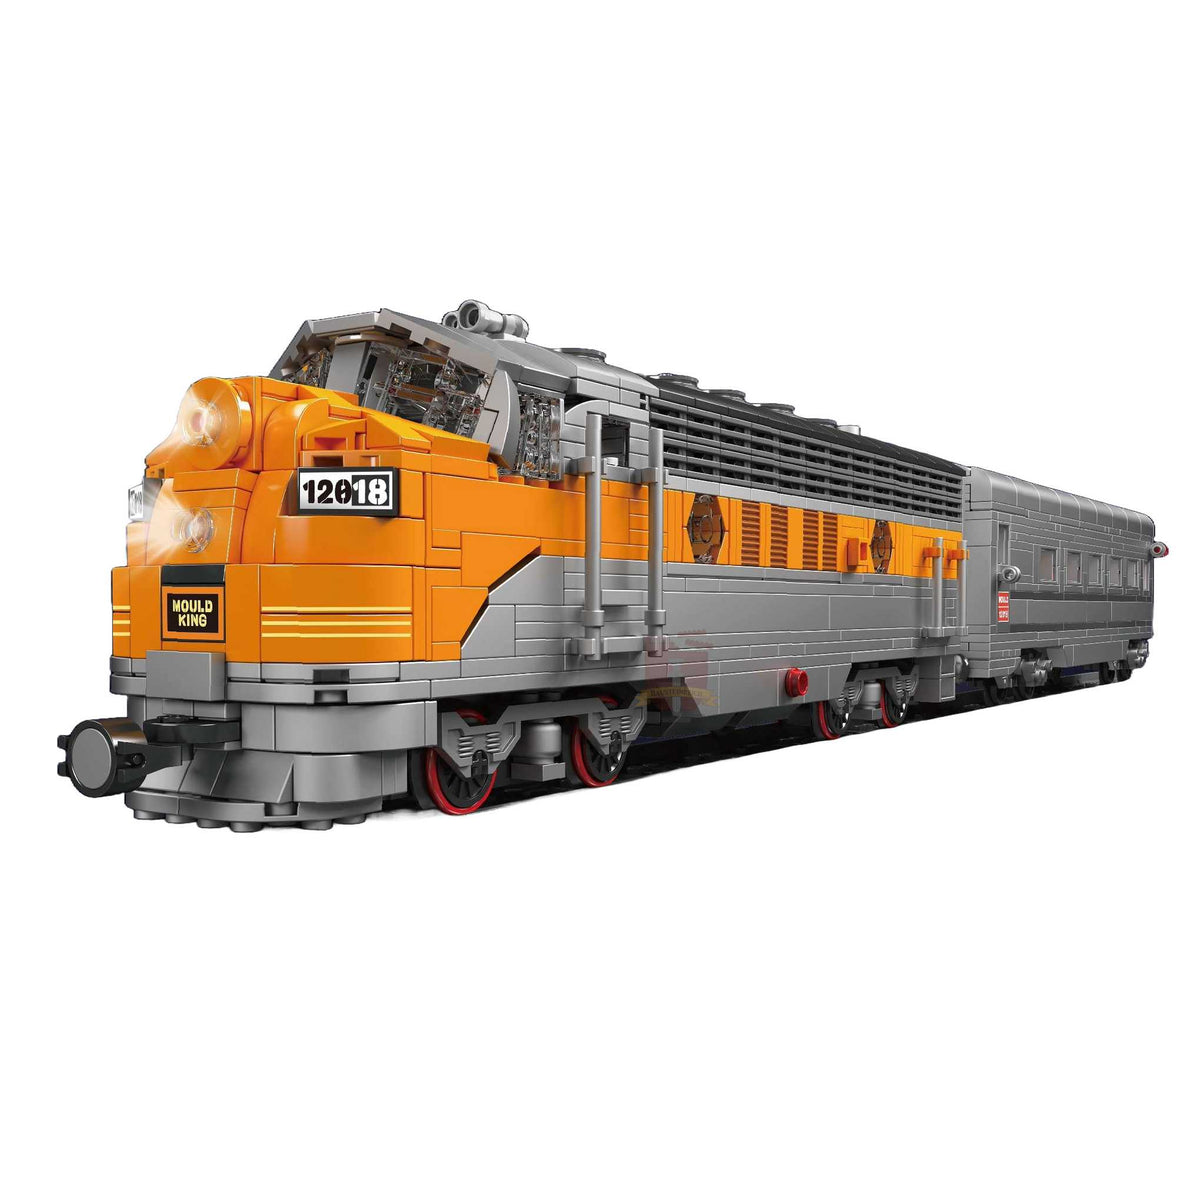 12018 - USA EMD F7 Diesellokomotive (Mould King)